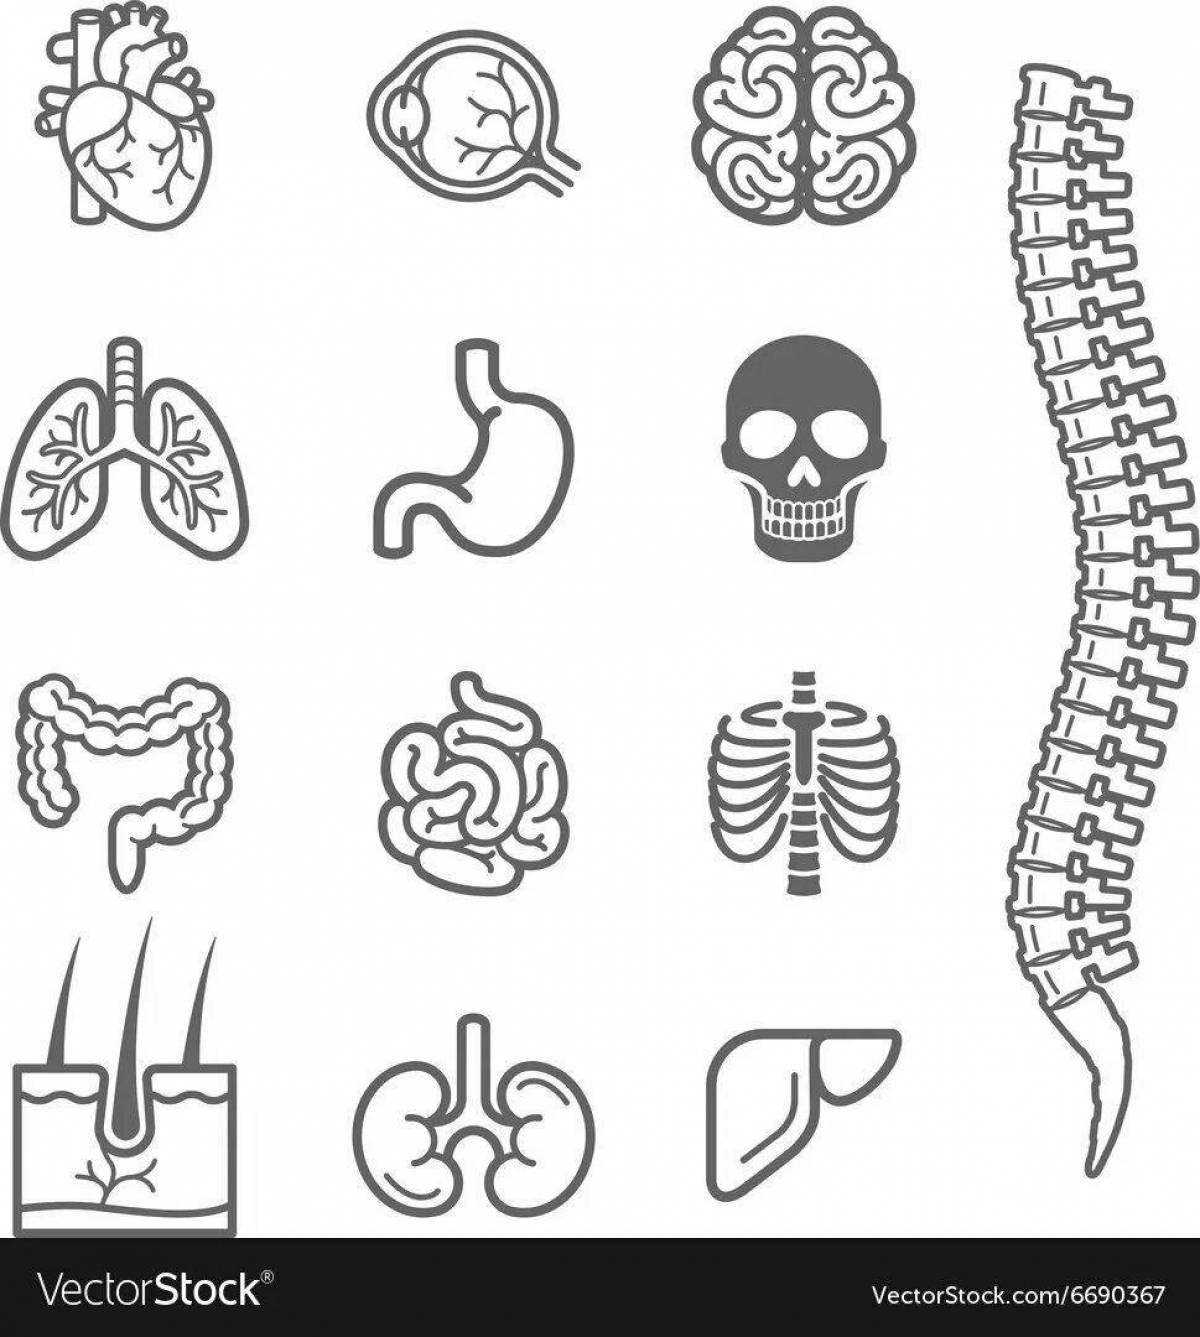 Human structure internal organs #7